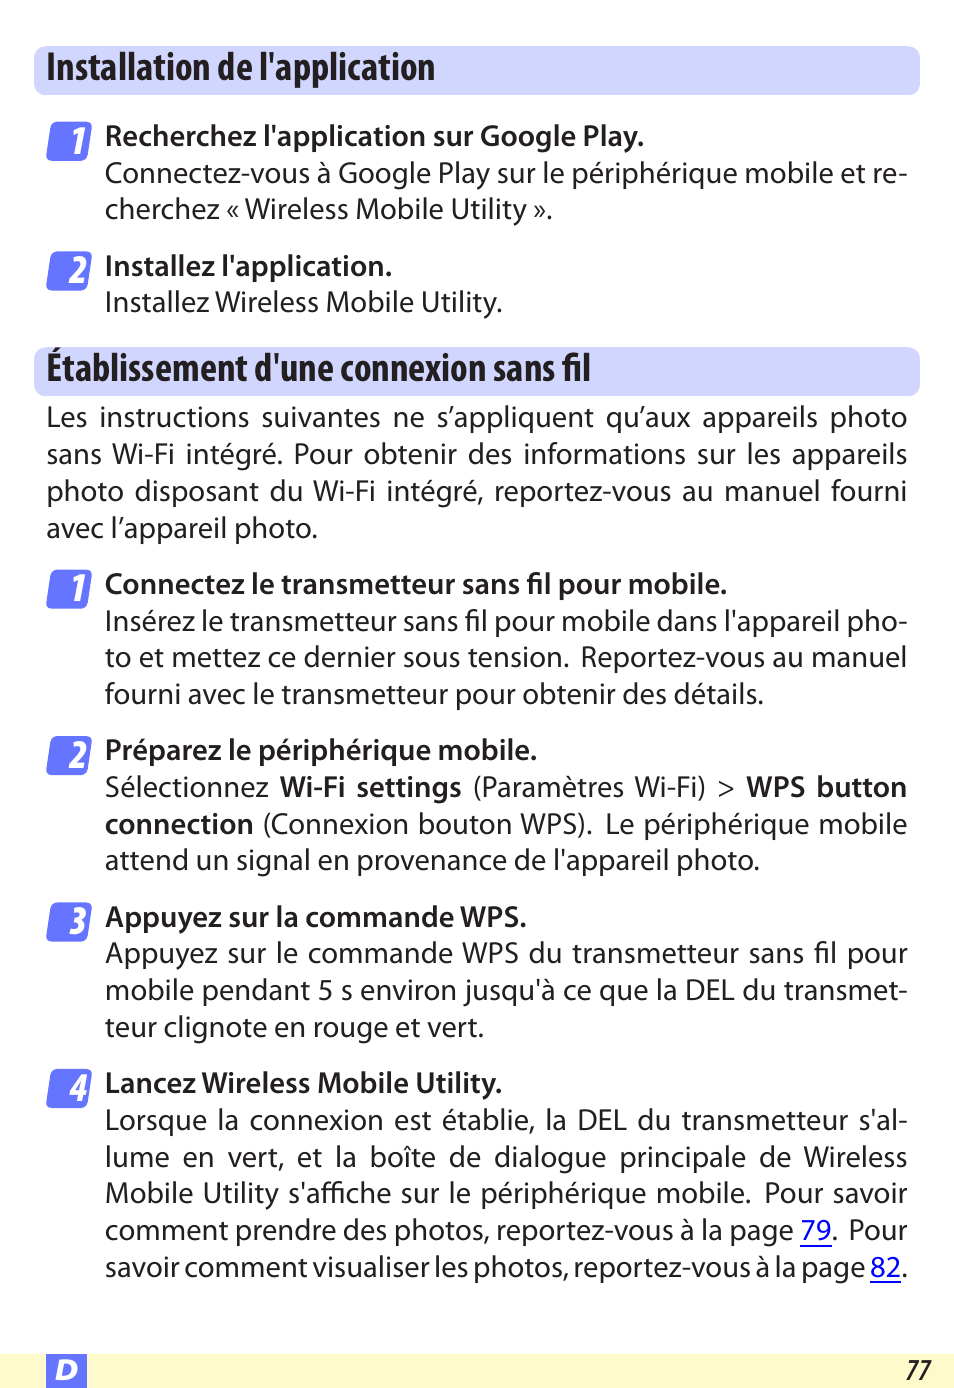 Installation de l'application, Établissement d'une connexion sans fil | Nikon Wireless-Mobile-Utility Manuel d'utilisation | Page 77 / 97